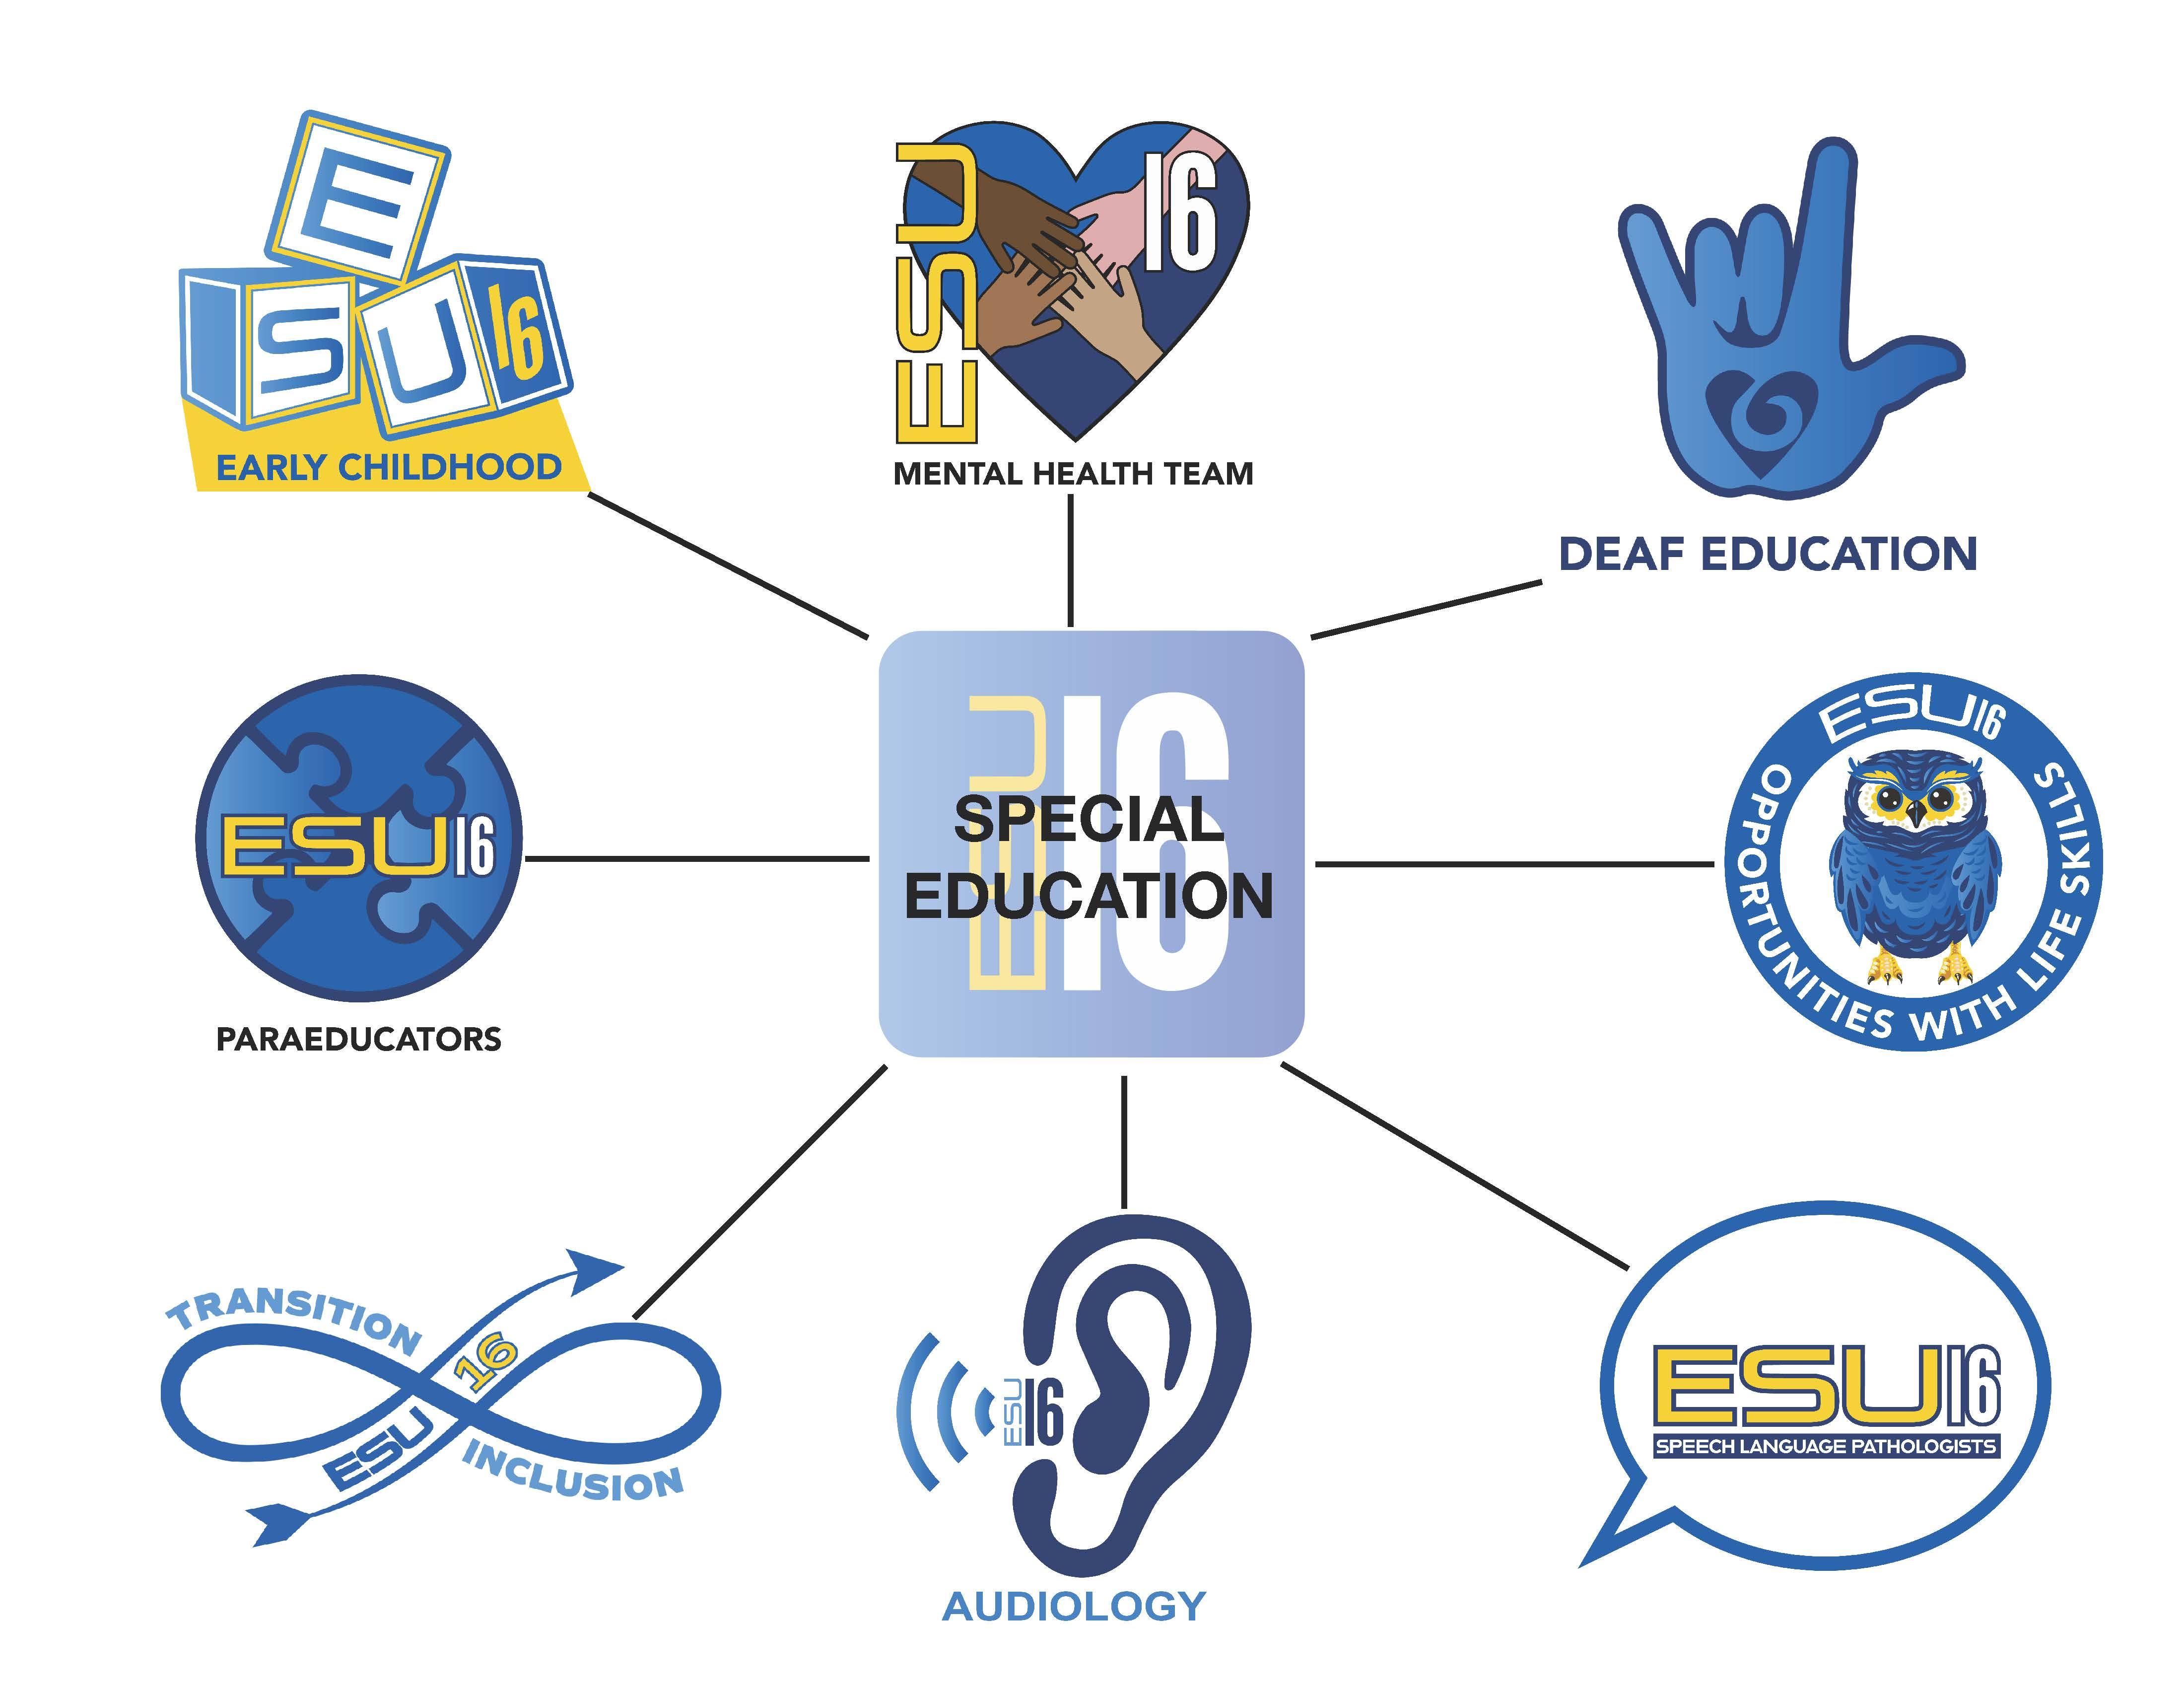 ESU 16 Special Education